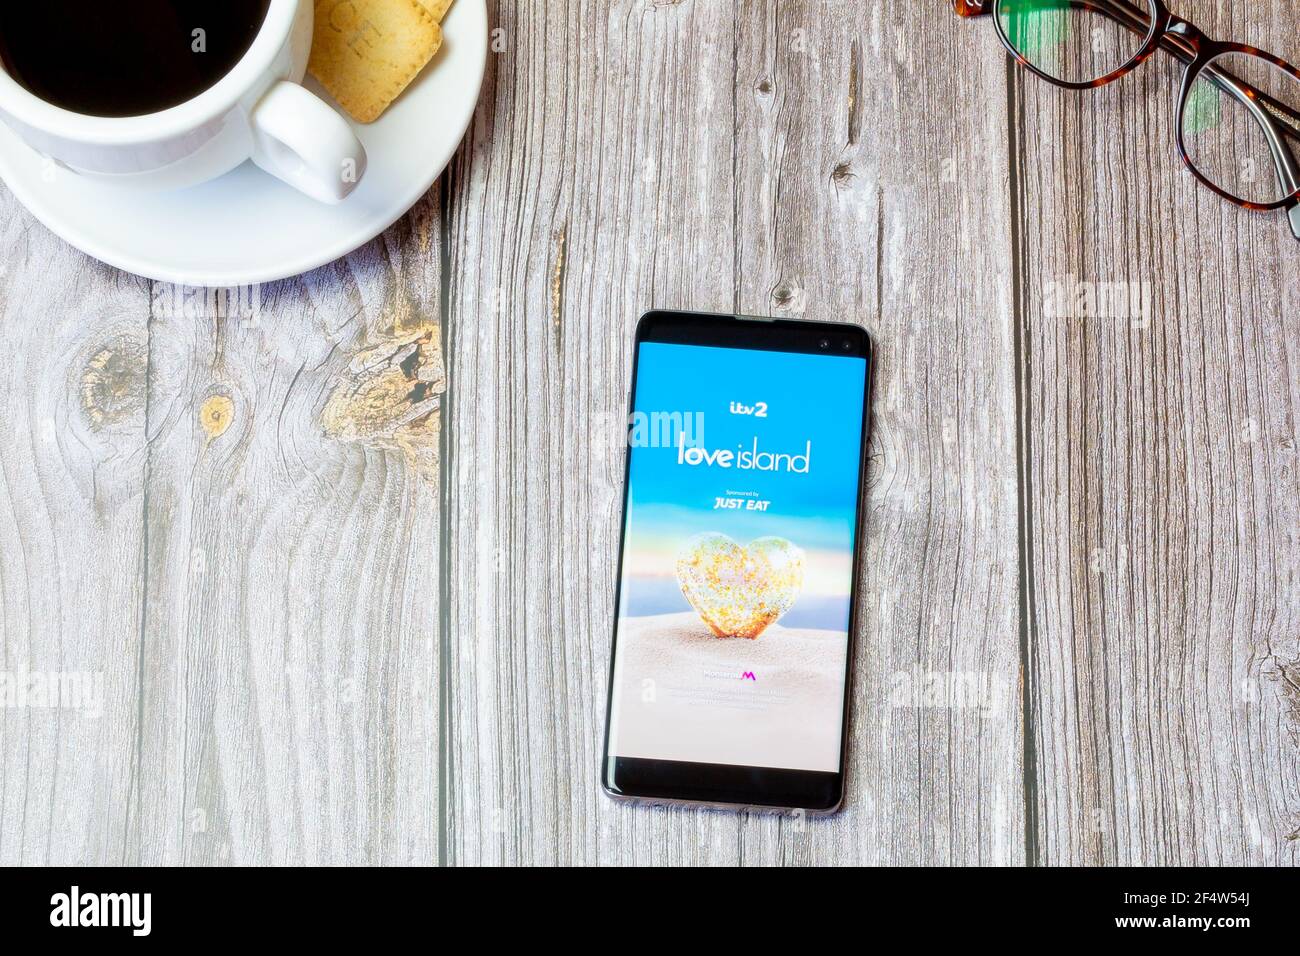 Un téléphone portable ou mobile posé sur un bois Table avec l'application Love Island ouverte à l'écran Banque D'Images